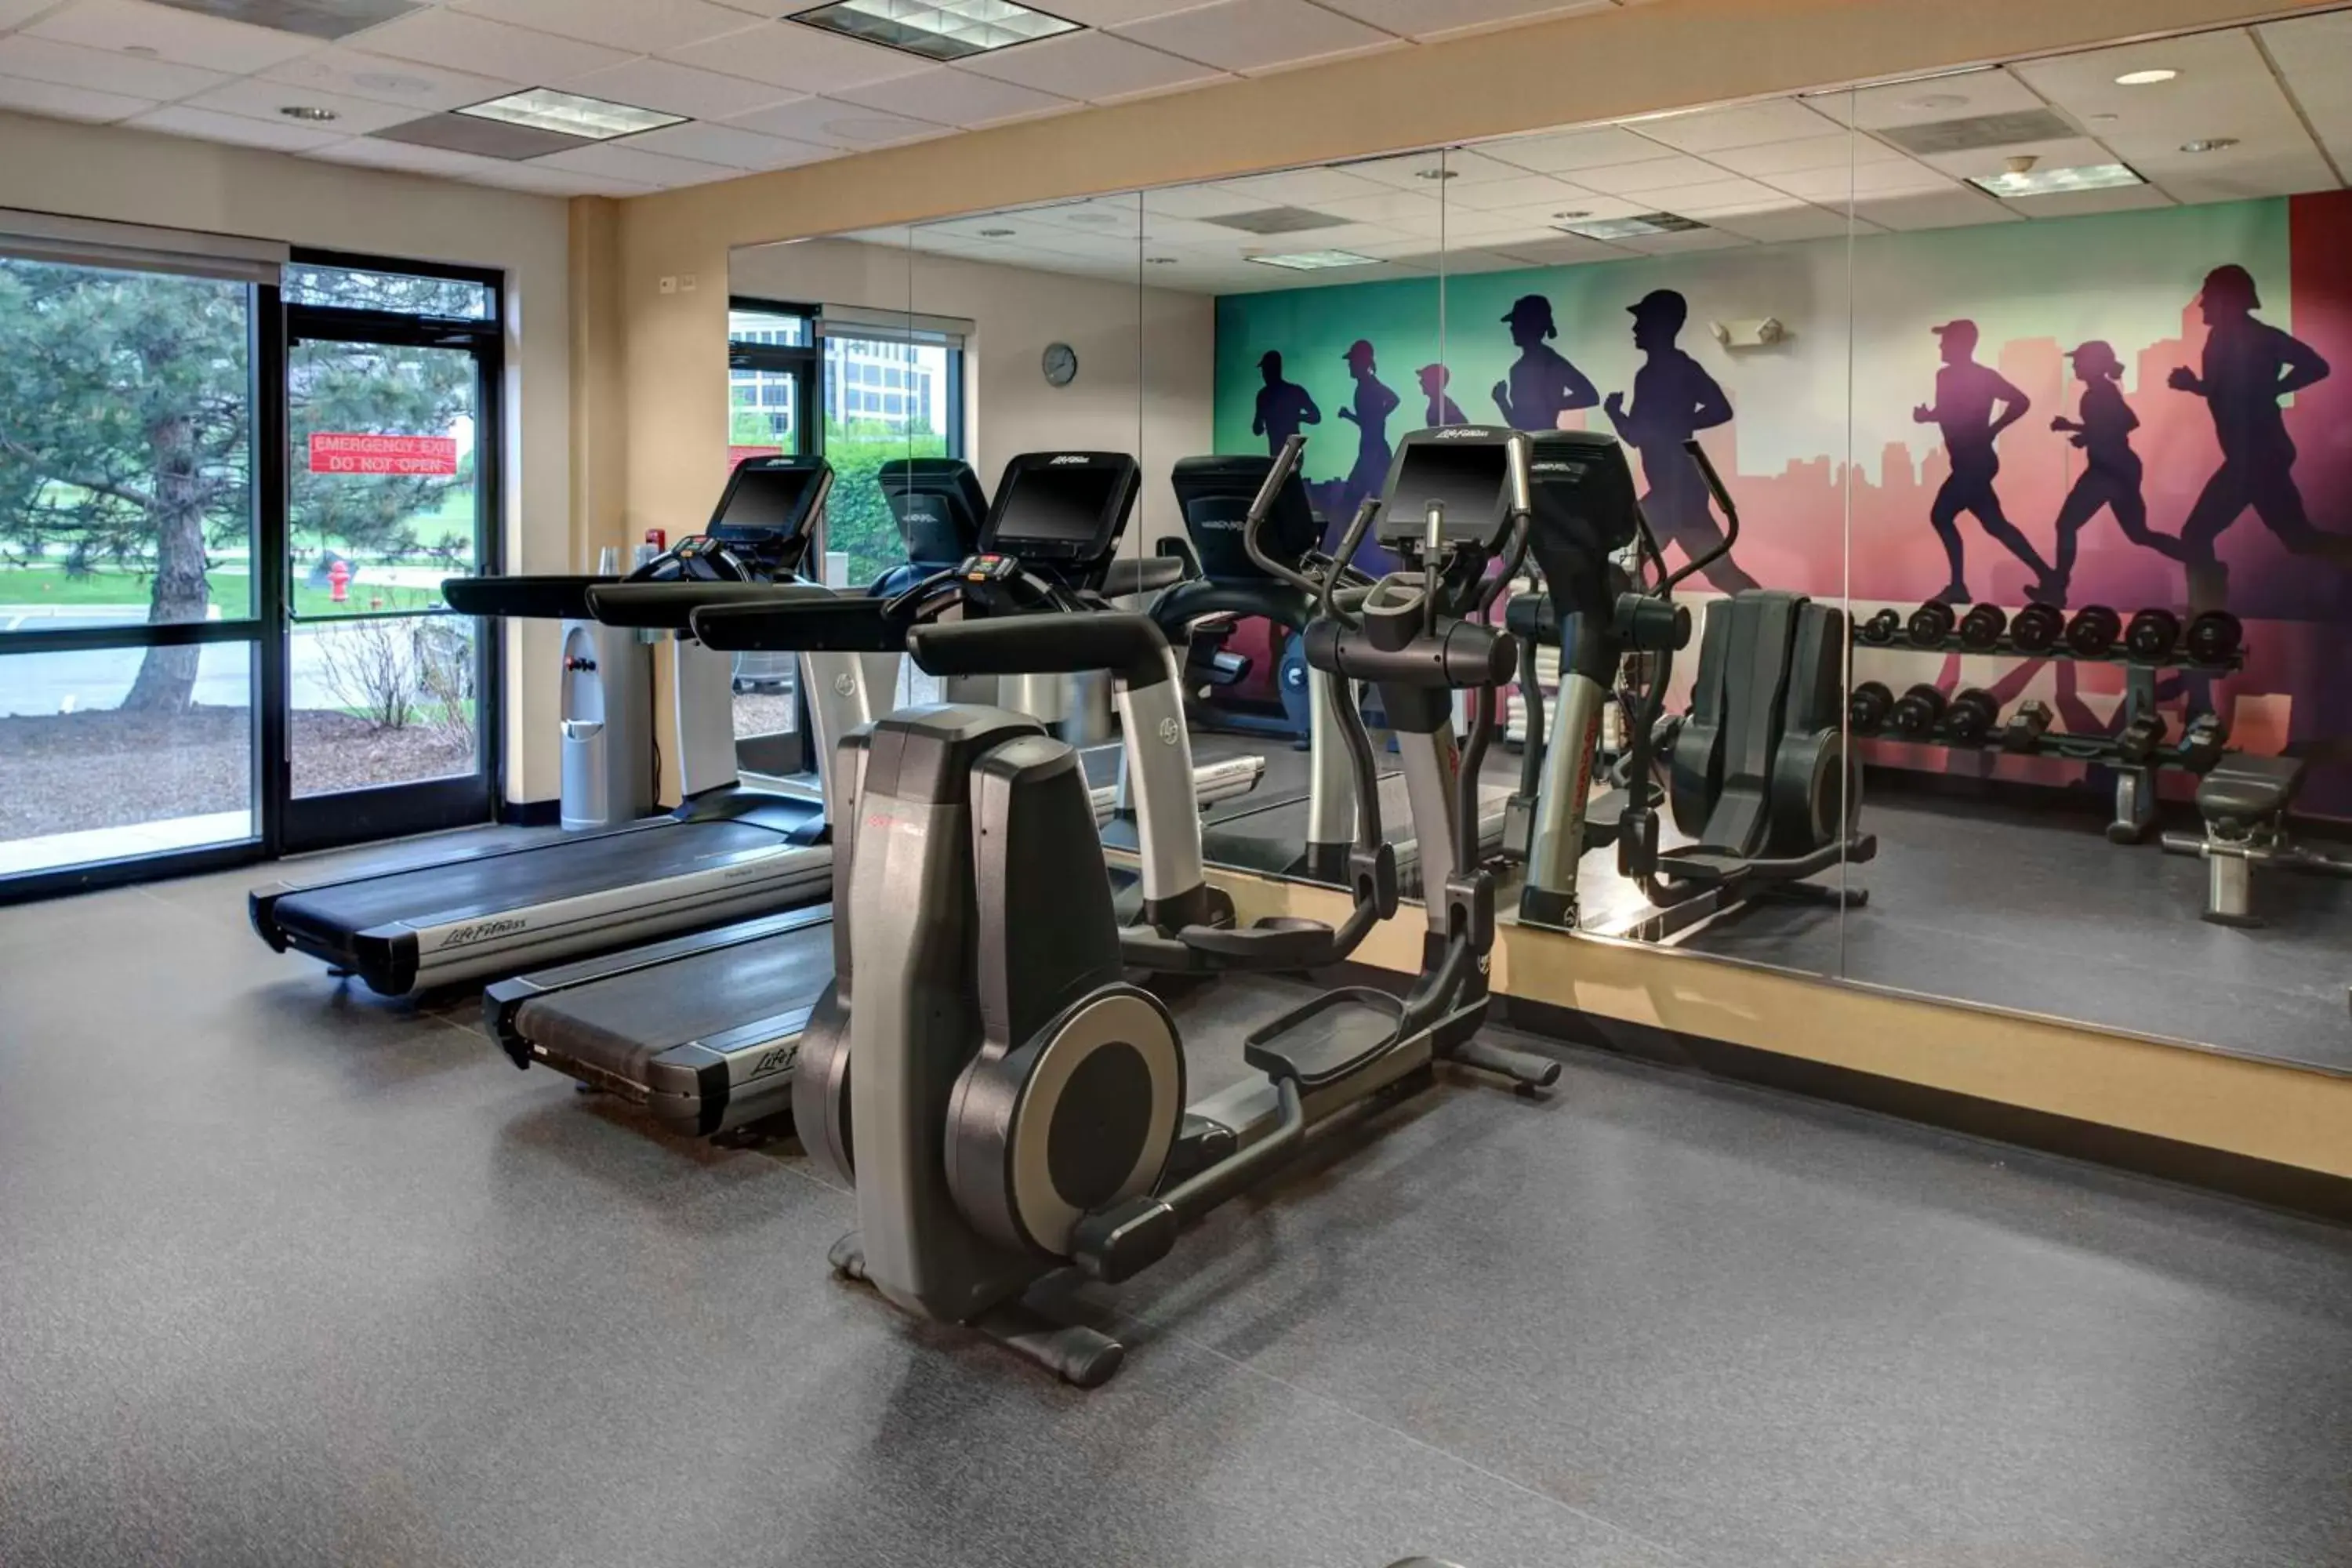 Fitness centre/facilities, Fitness Center/Facilities in Hyatt Place Nashville Opryland